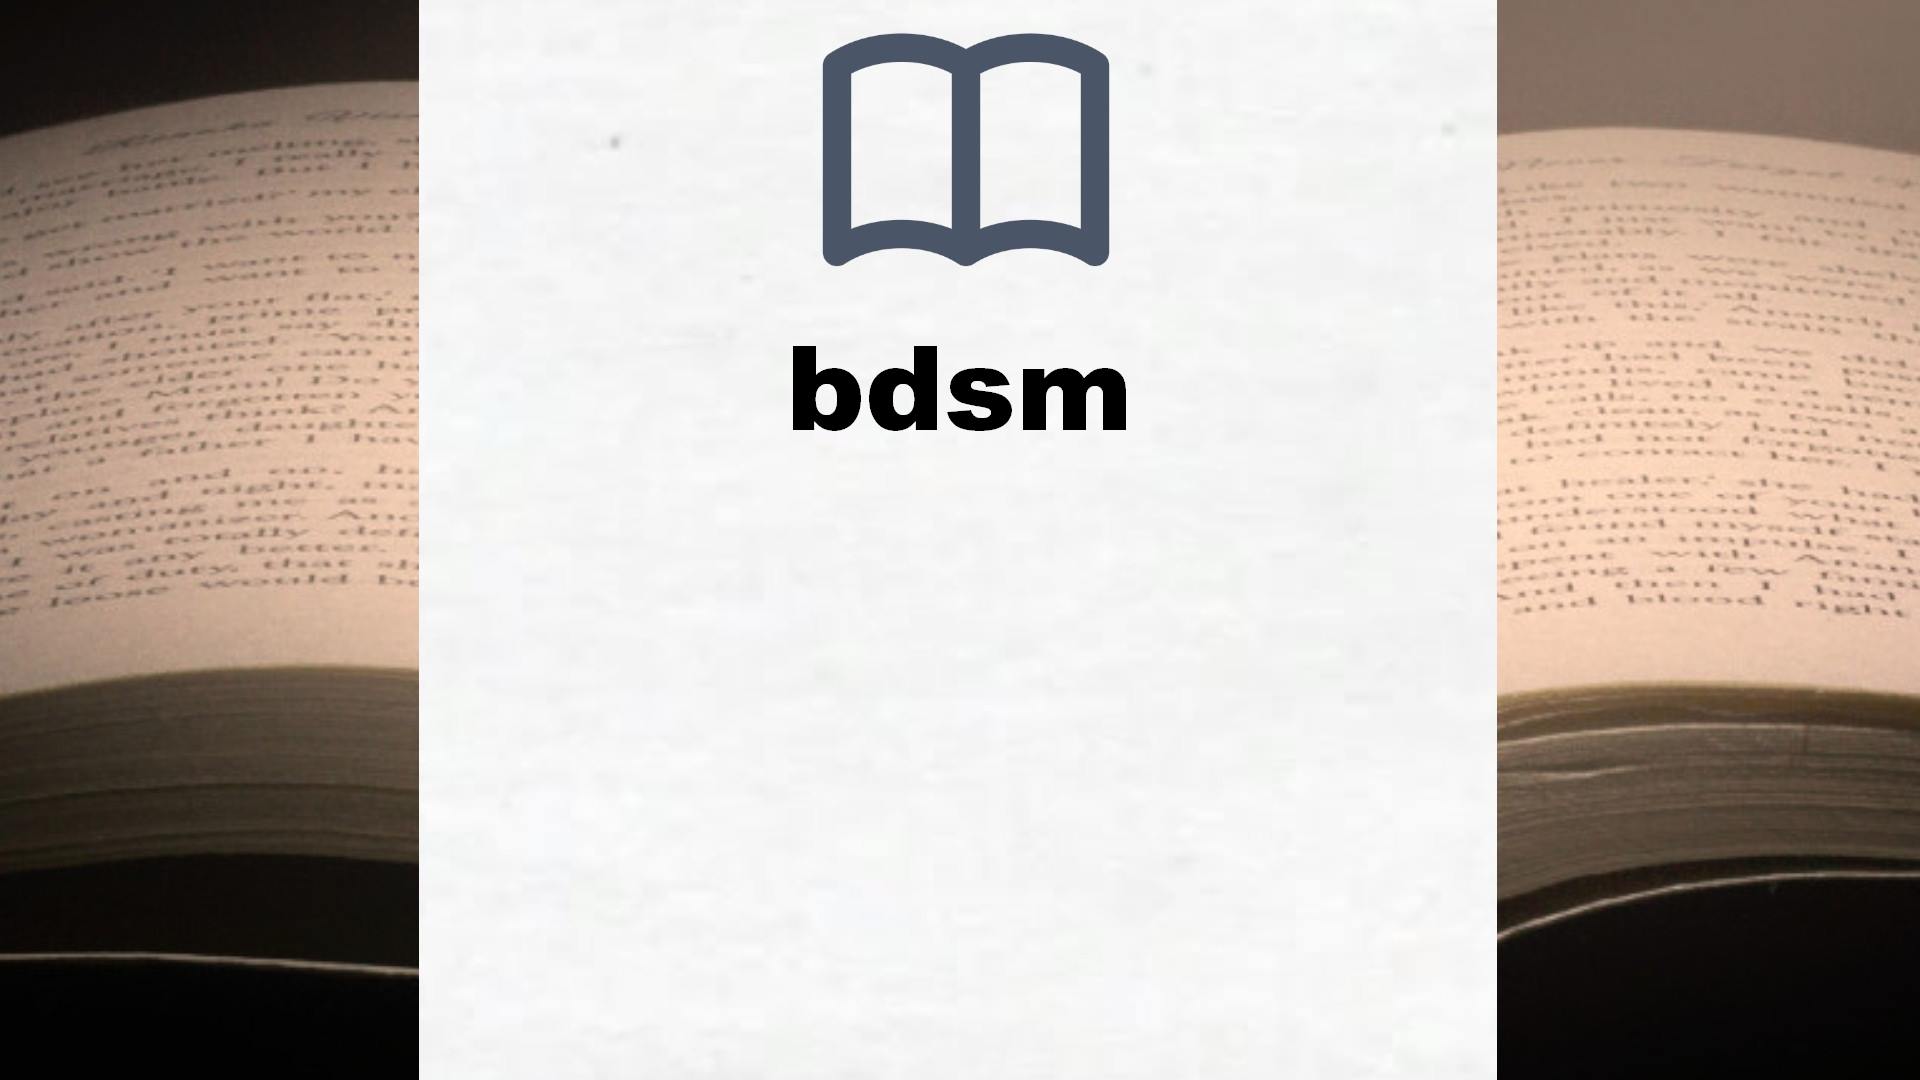 Libros sobre bdsm